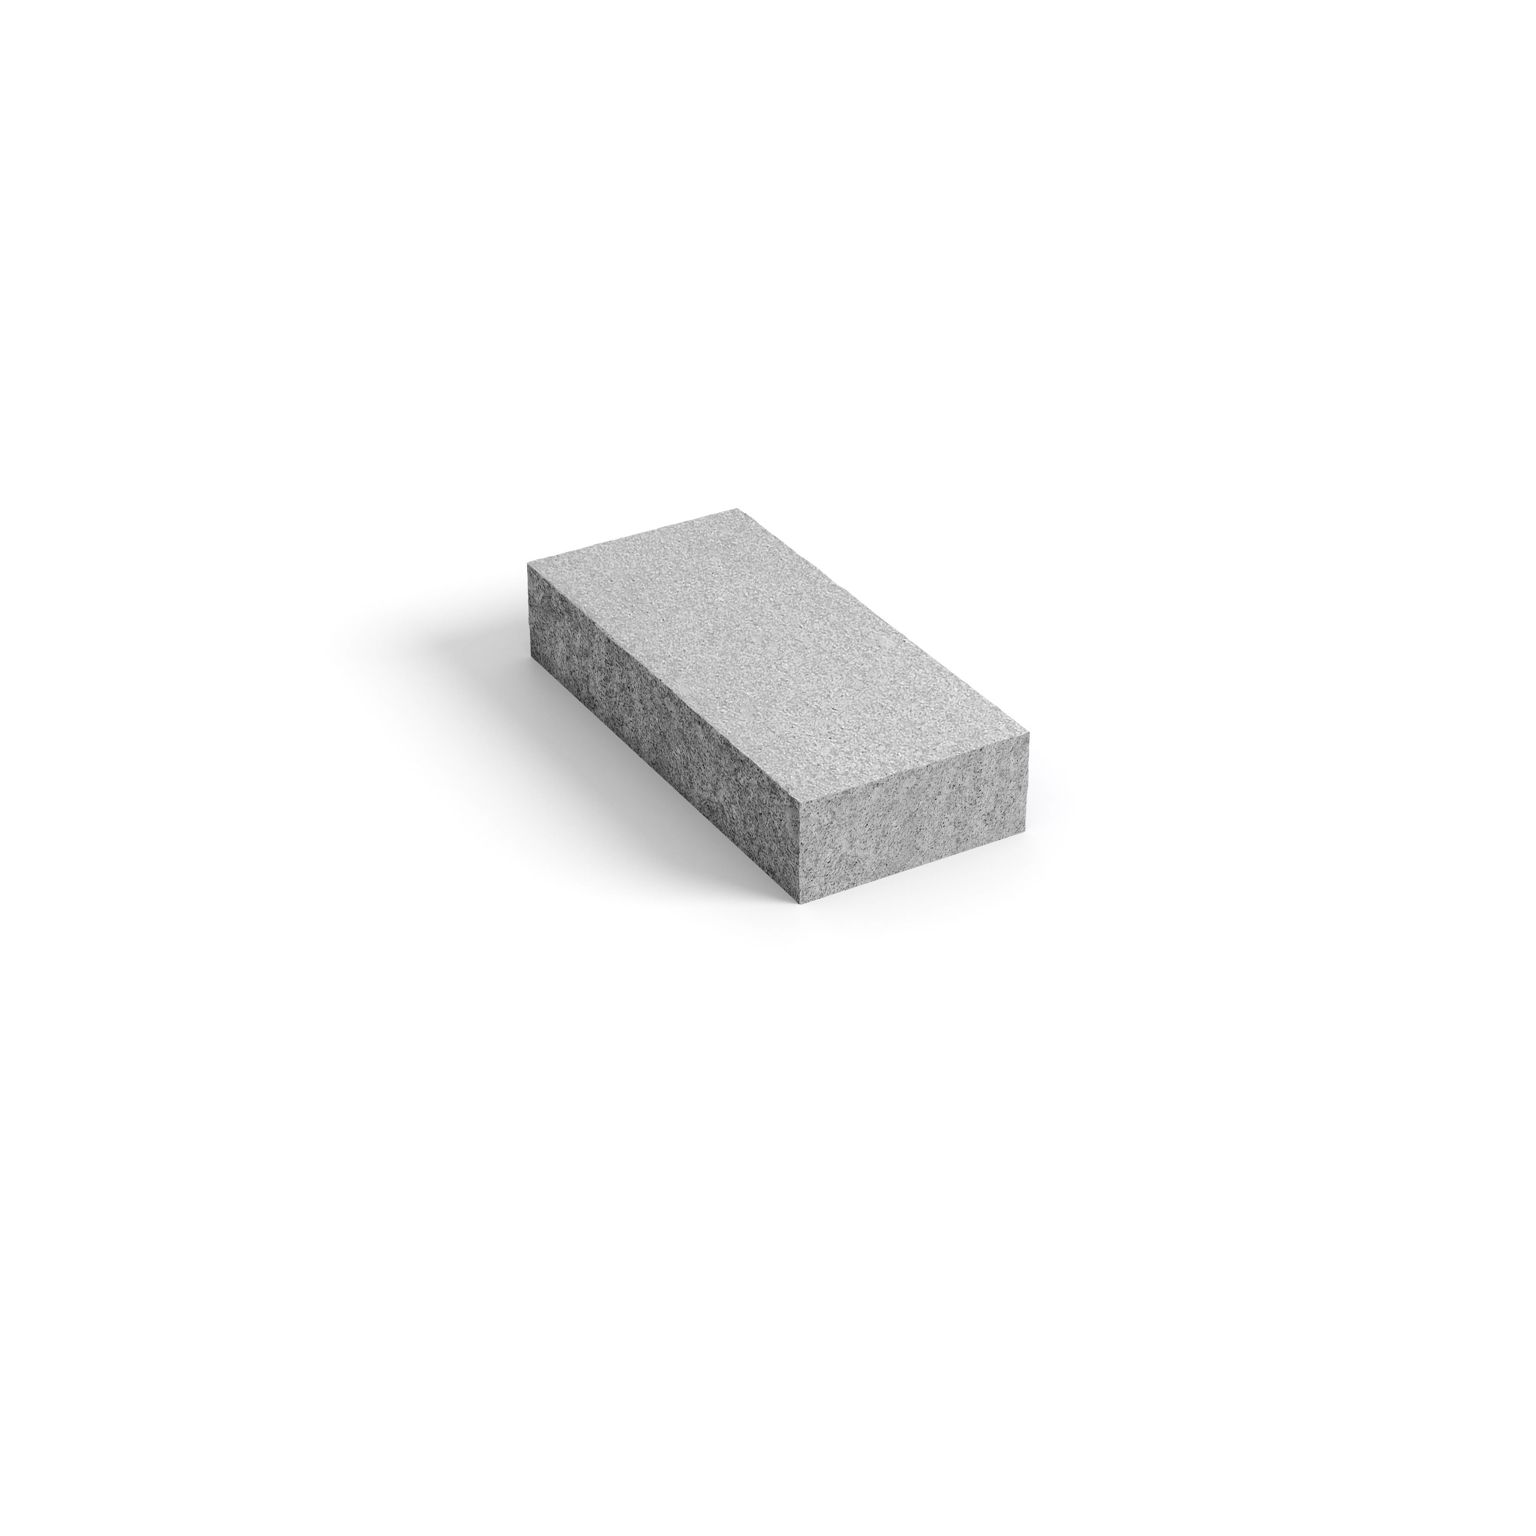 Produktbild på blocksteg i granit med måtten 750x330x140 mm i färgen Porto grå.